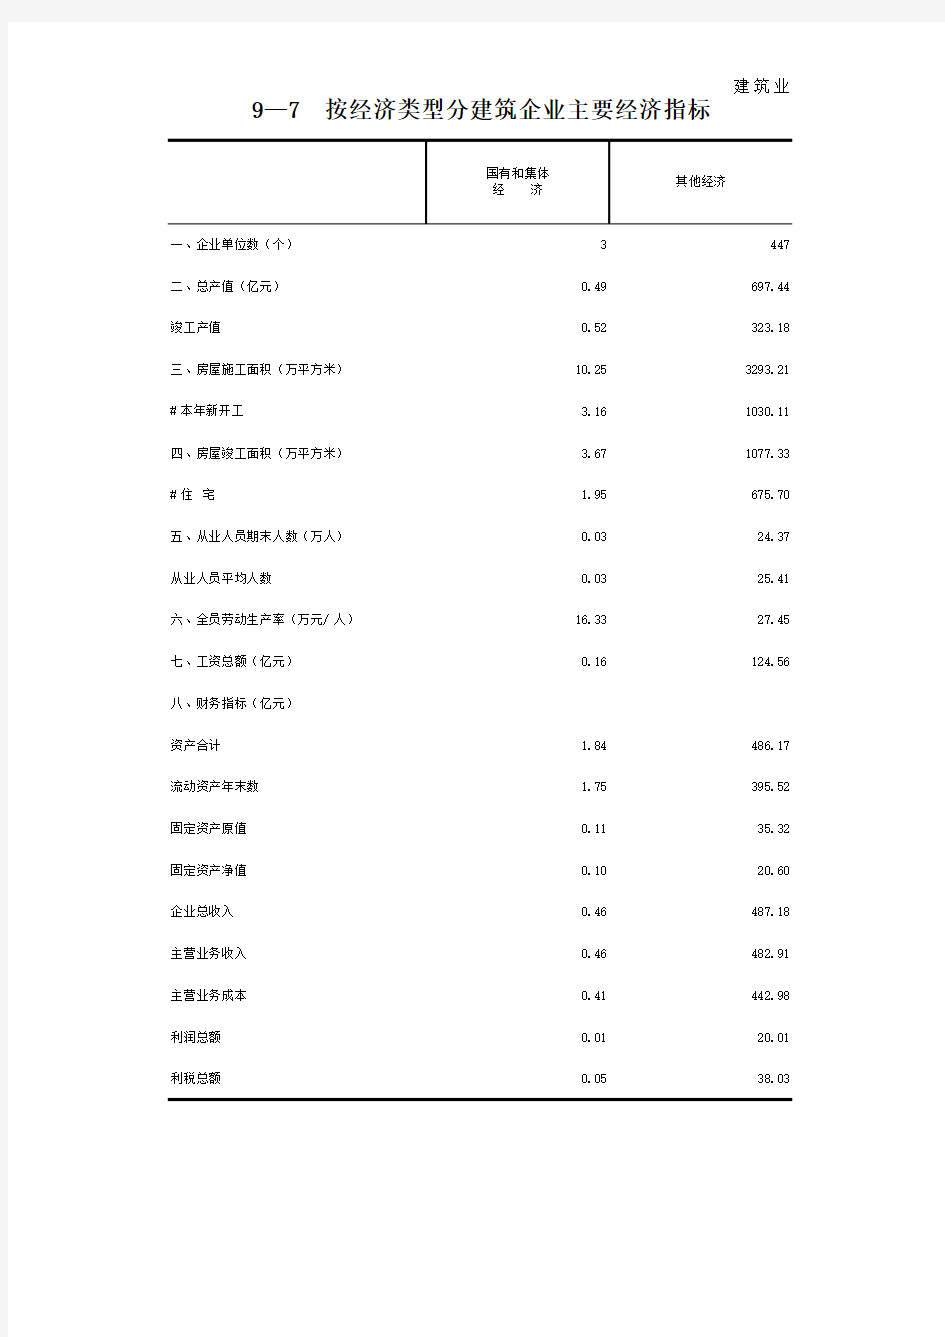 漳州市统计年鉴2020：按经济类型分建筑企业经济指标